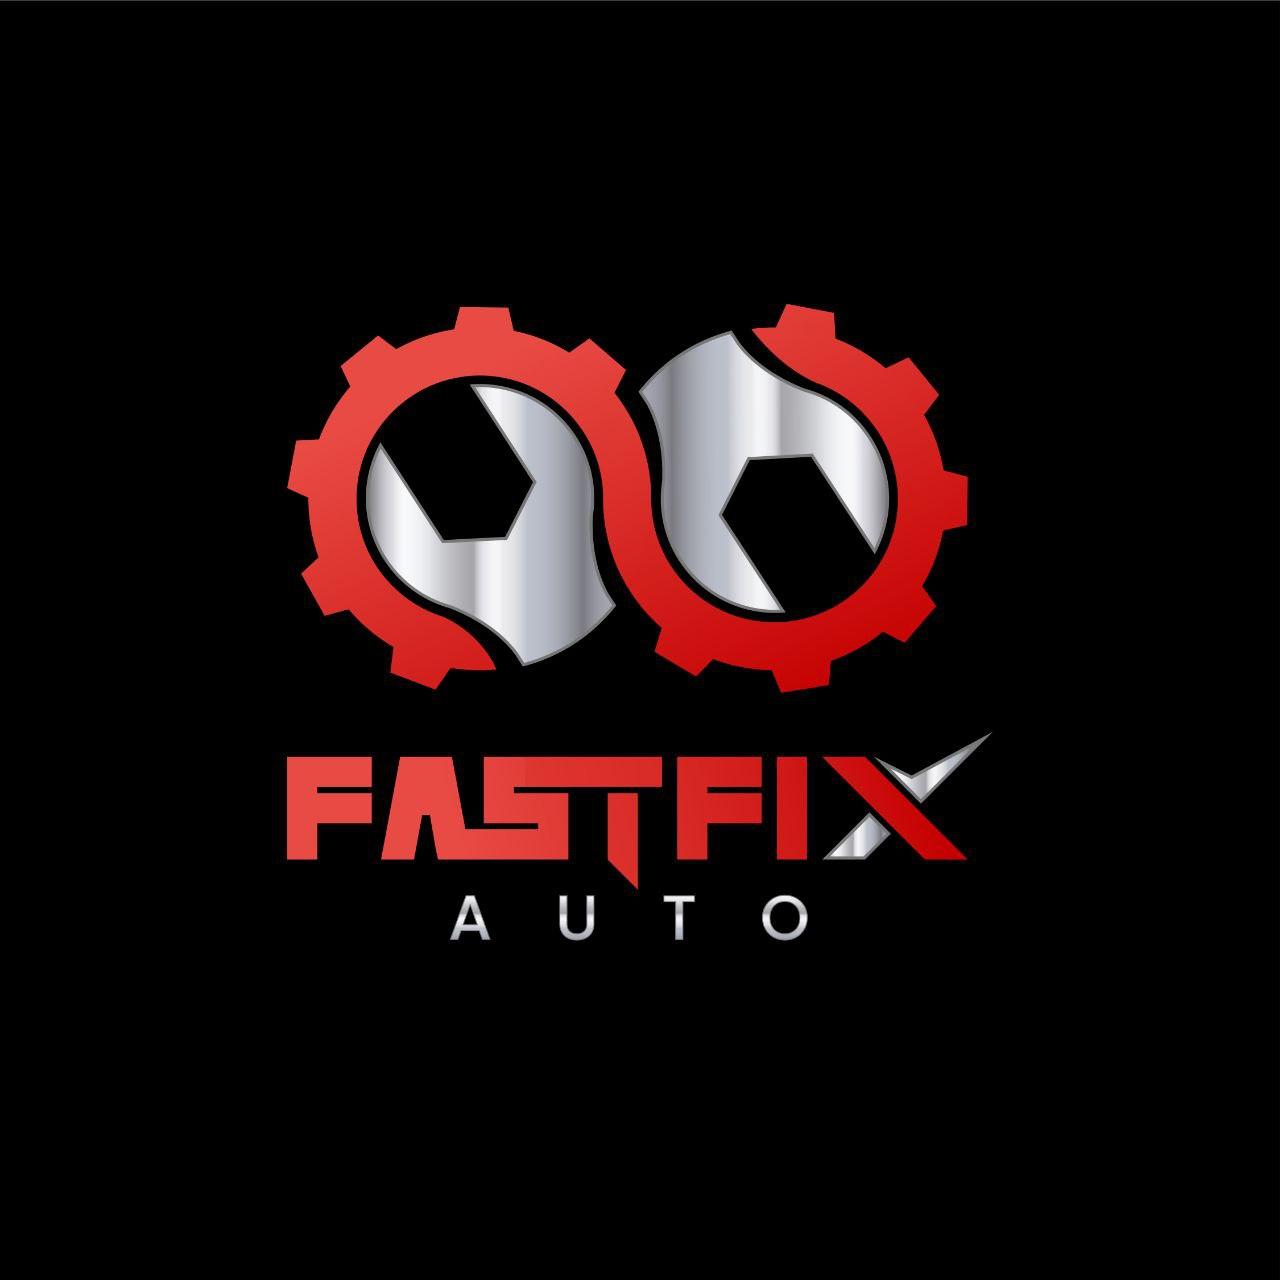 Fast Fix Auto